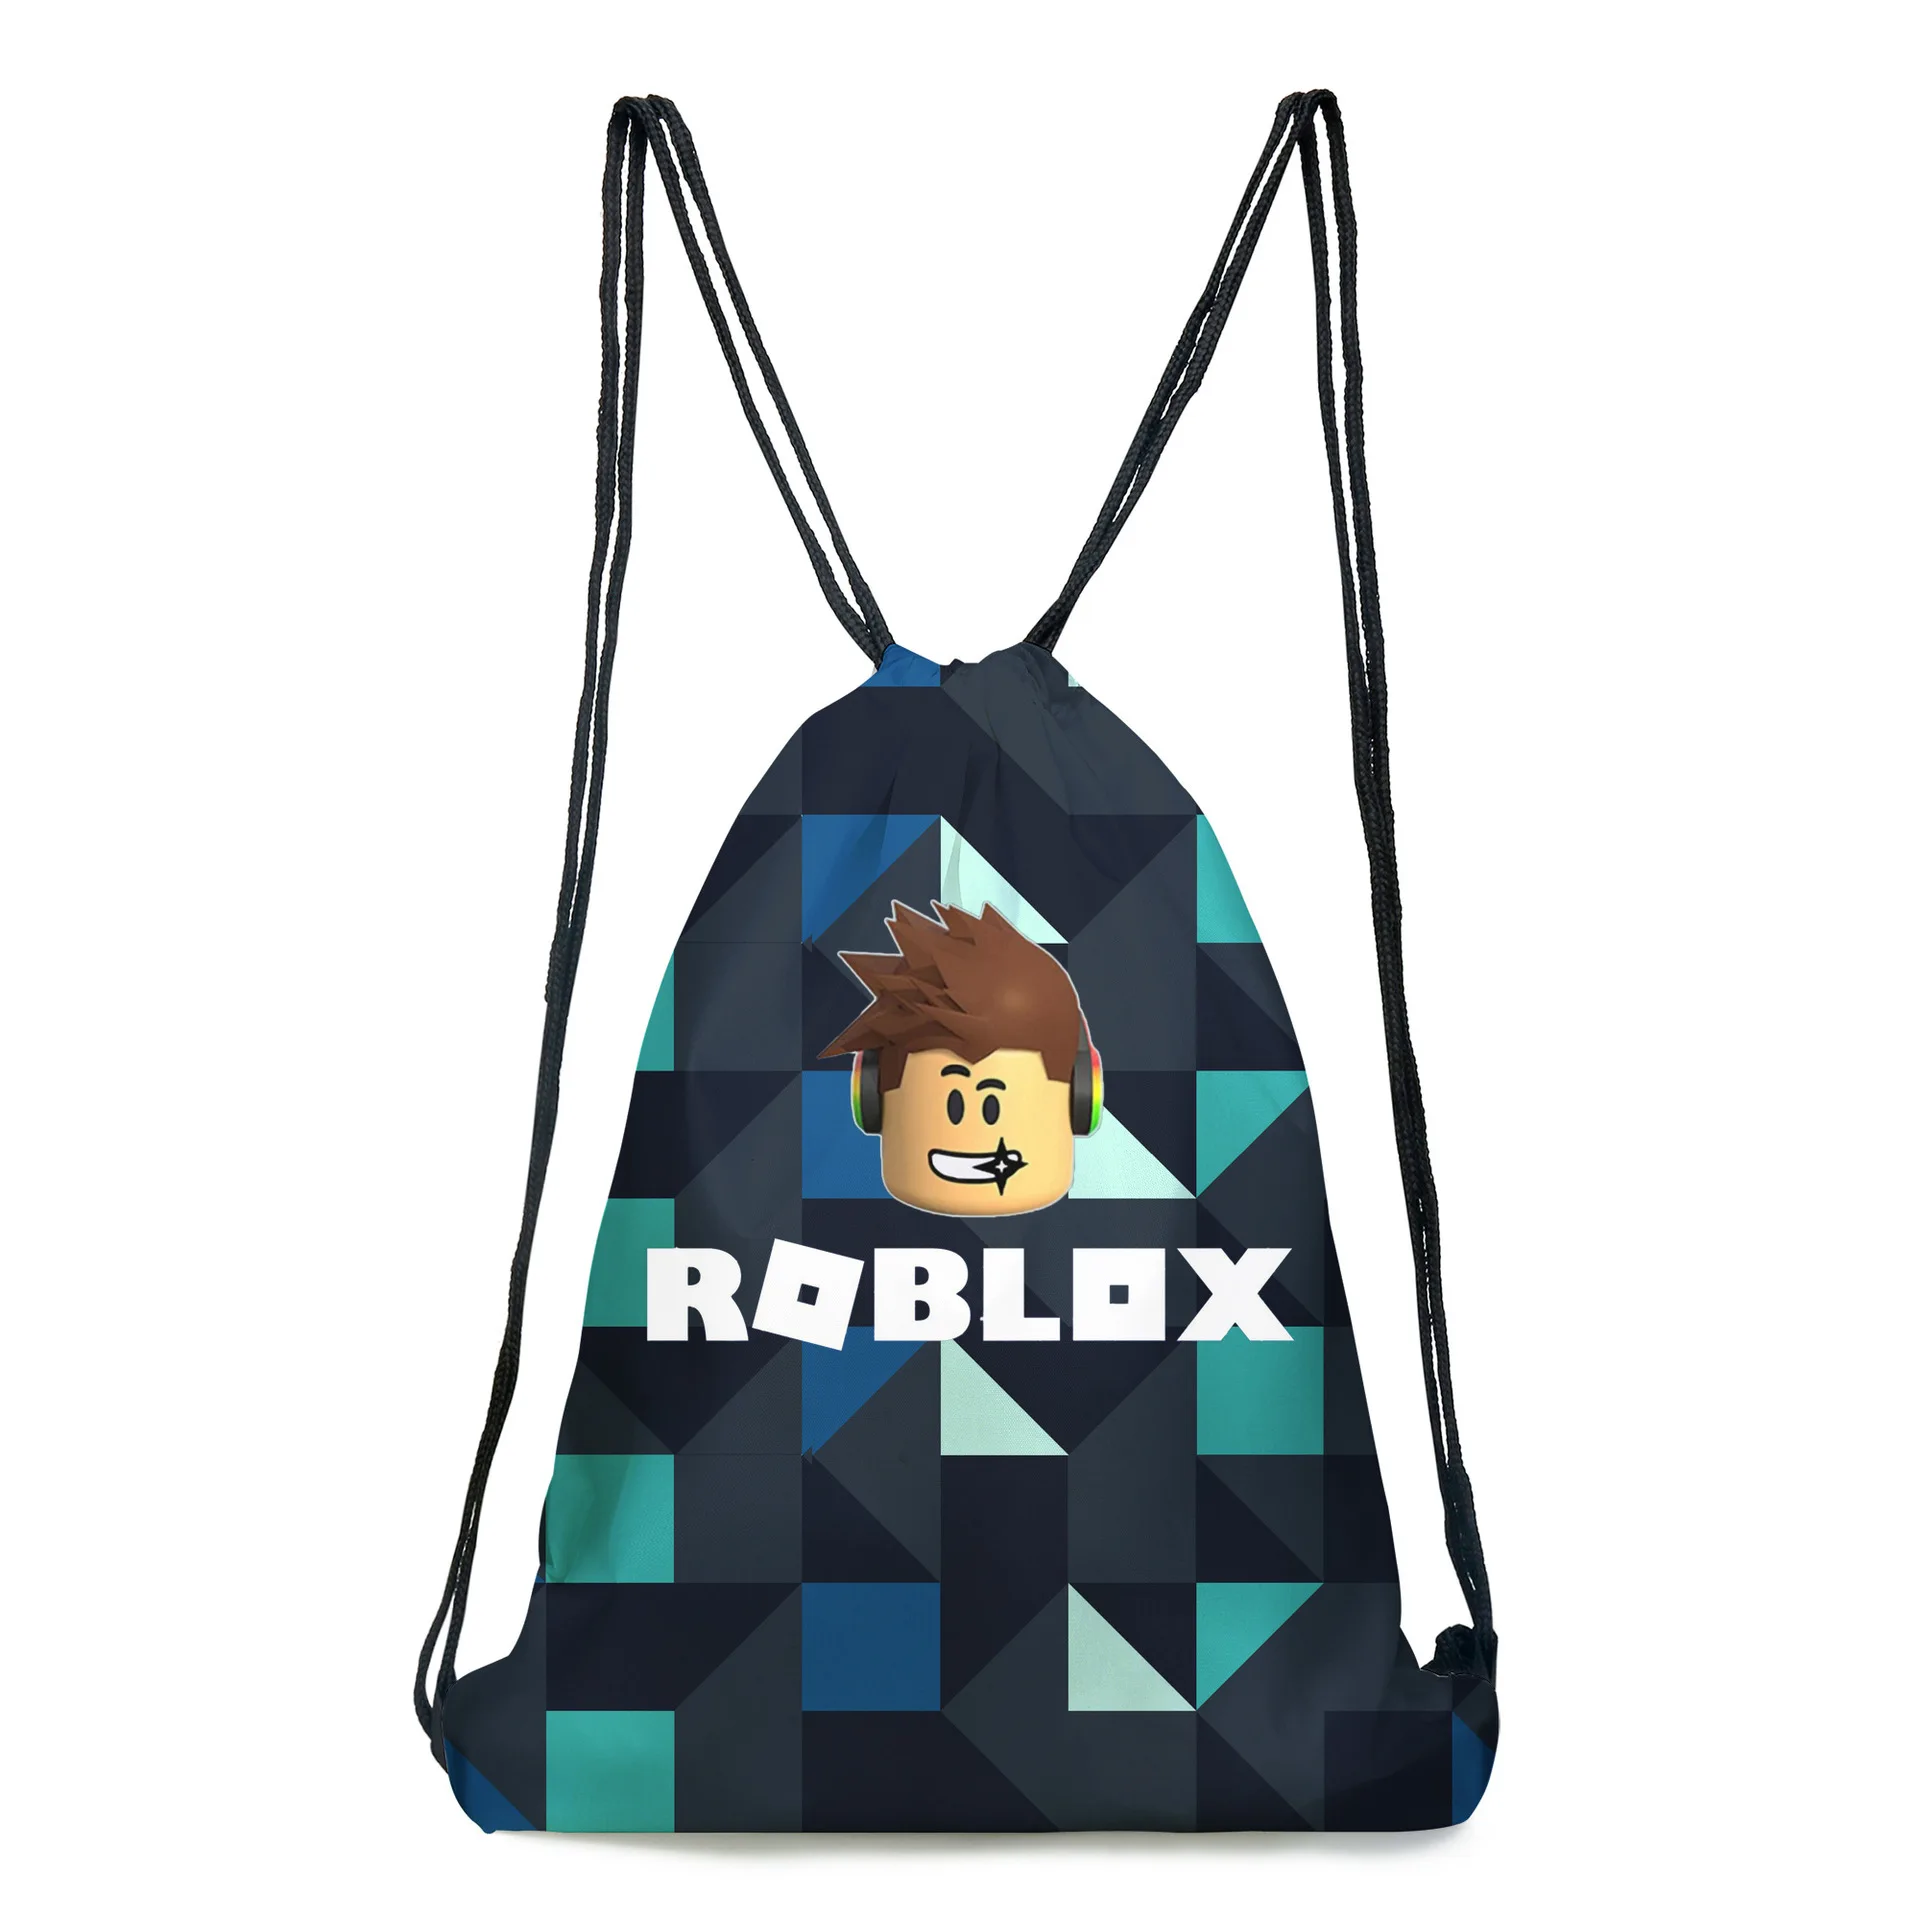 กระเป าสะพาย Roblox ถ กท ส ด พร อมโปรโมช น ต ค 2020 Biggo เช คราคา ง ายๆ - เกม roblox โปรโมชนรานคาสำหรบตามโปรโมชนเกม roblox บน